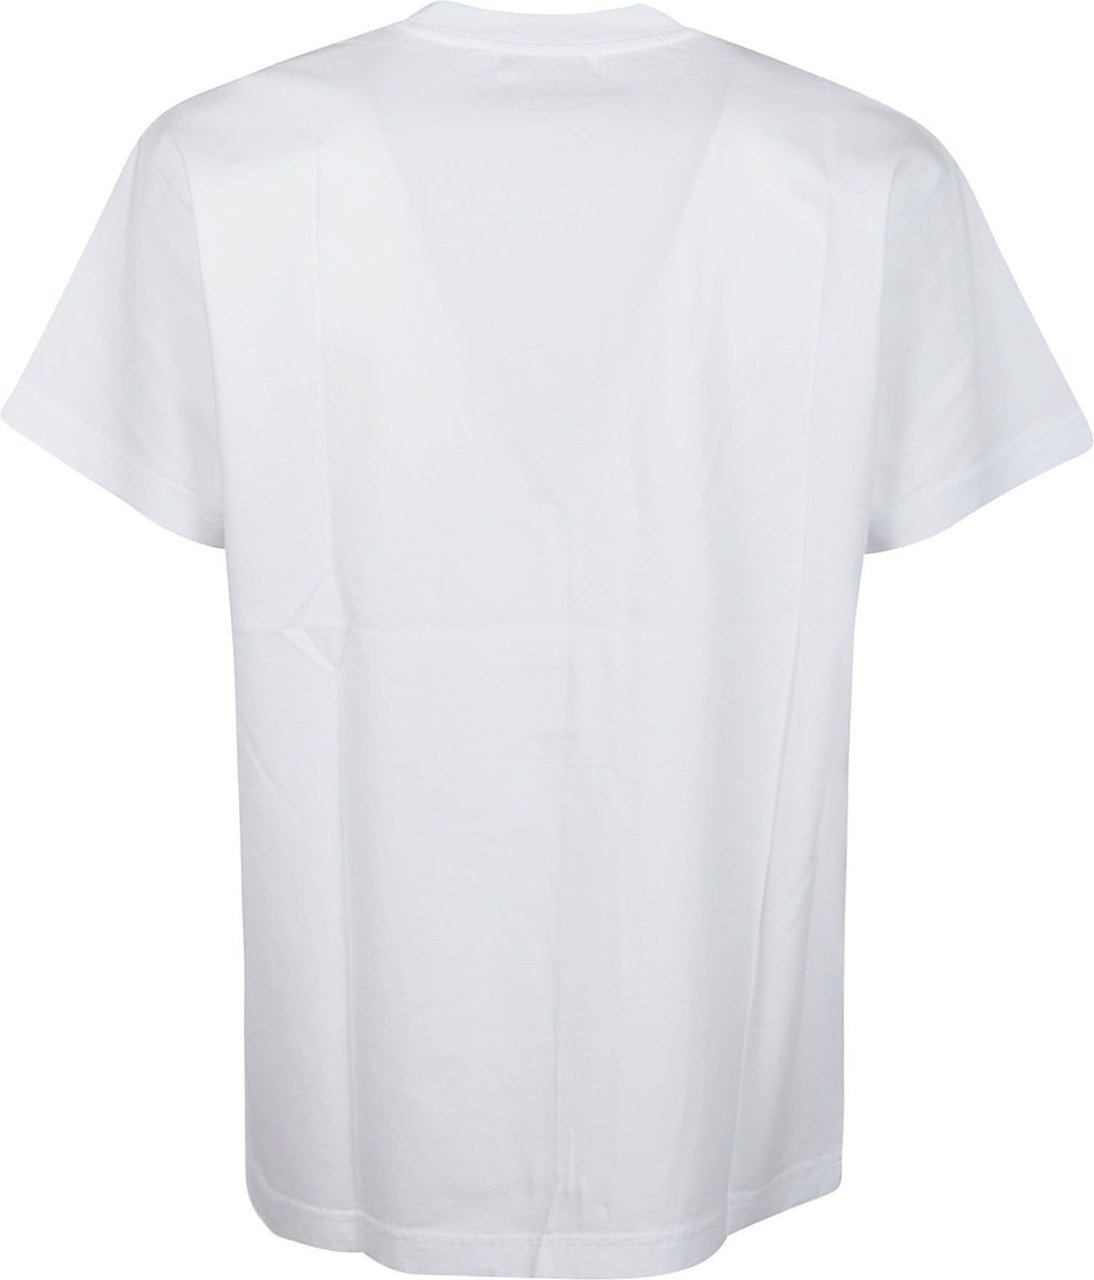 AMBUSH Tri-pack T-shirt White Wit